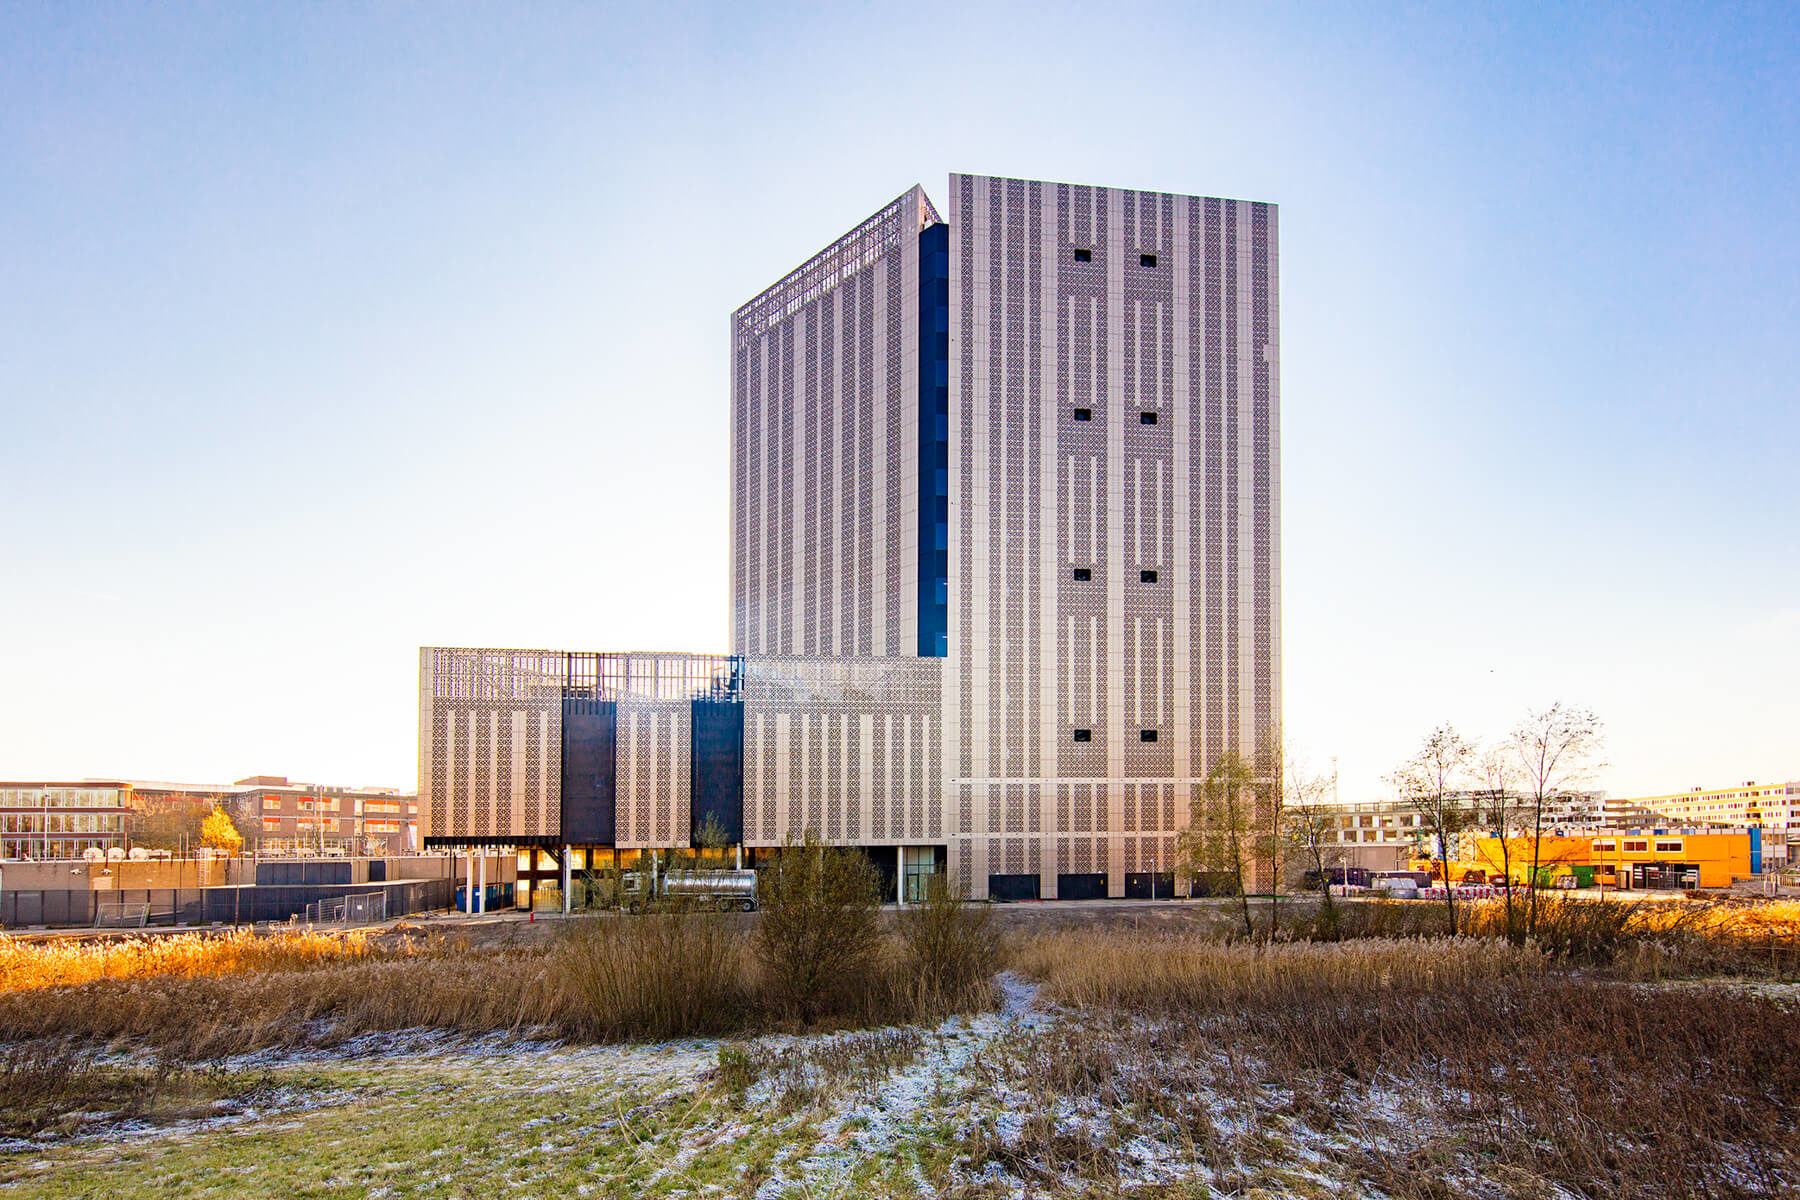 Op het Science Park in Amsterdam is een nieuw datacenter gebouwd; “Amsterdam Data Tower”. Het gebouw is 72 meter hoog, ruim 16.000 m2 groot en heeft verdiepingshoogtes van 5,4 meter.